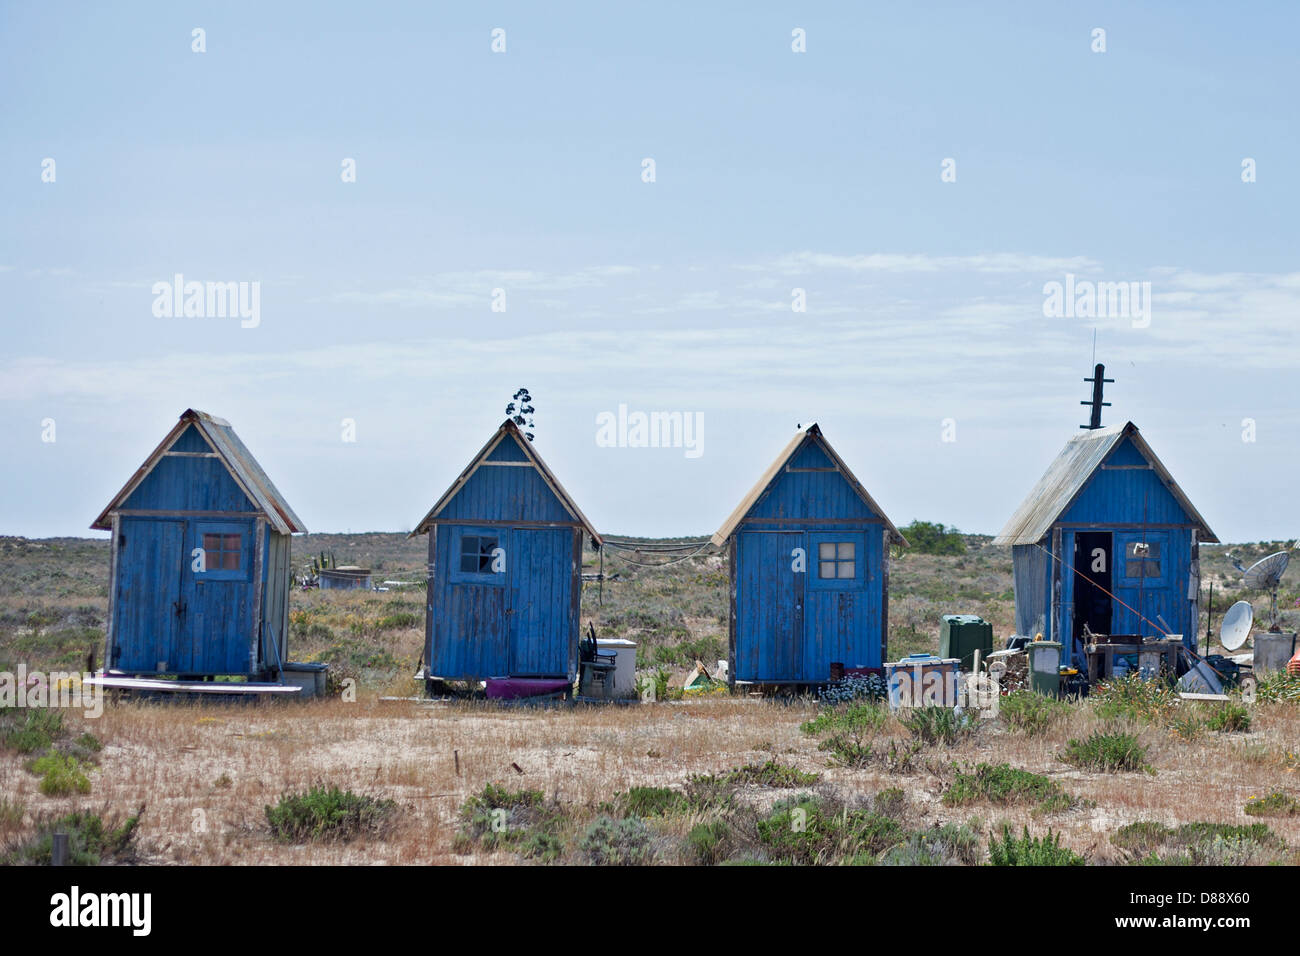 Peint bleu cabanes de plage sur une île déserte au Portugal Banque D'Images